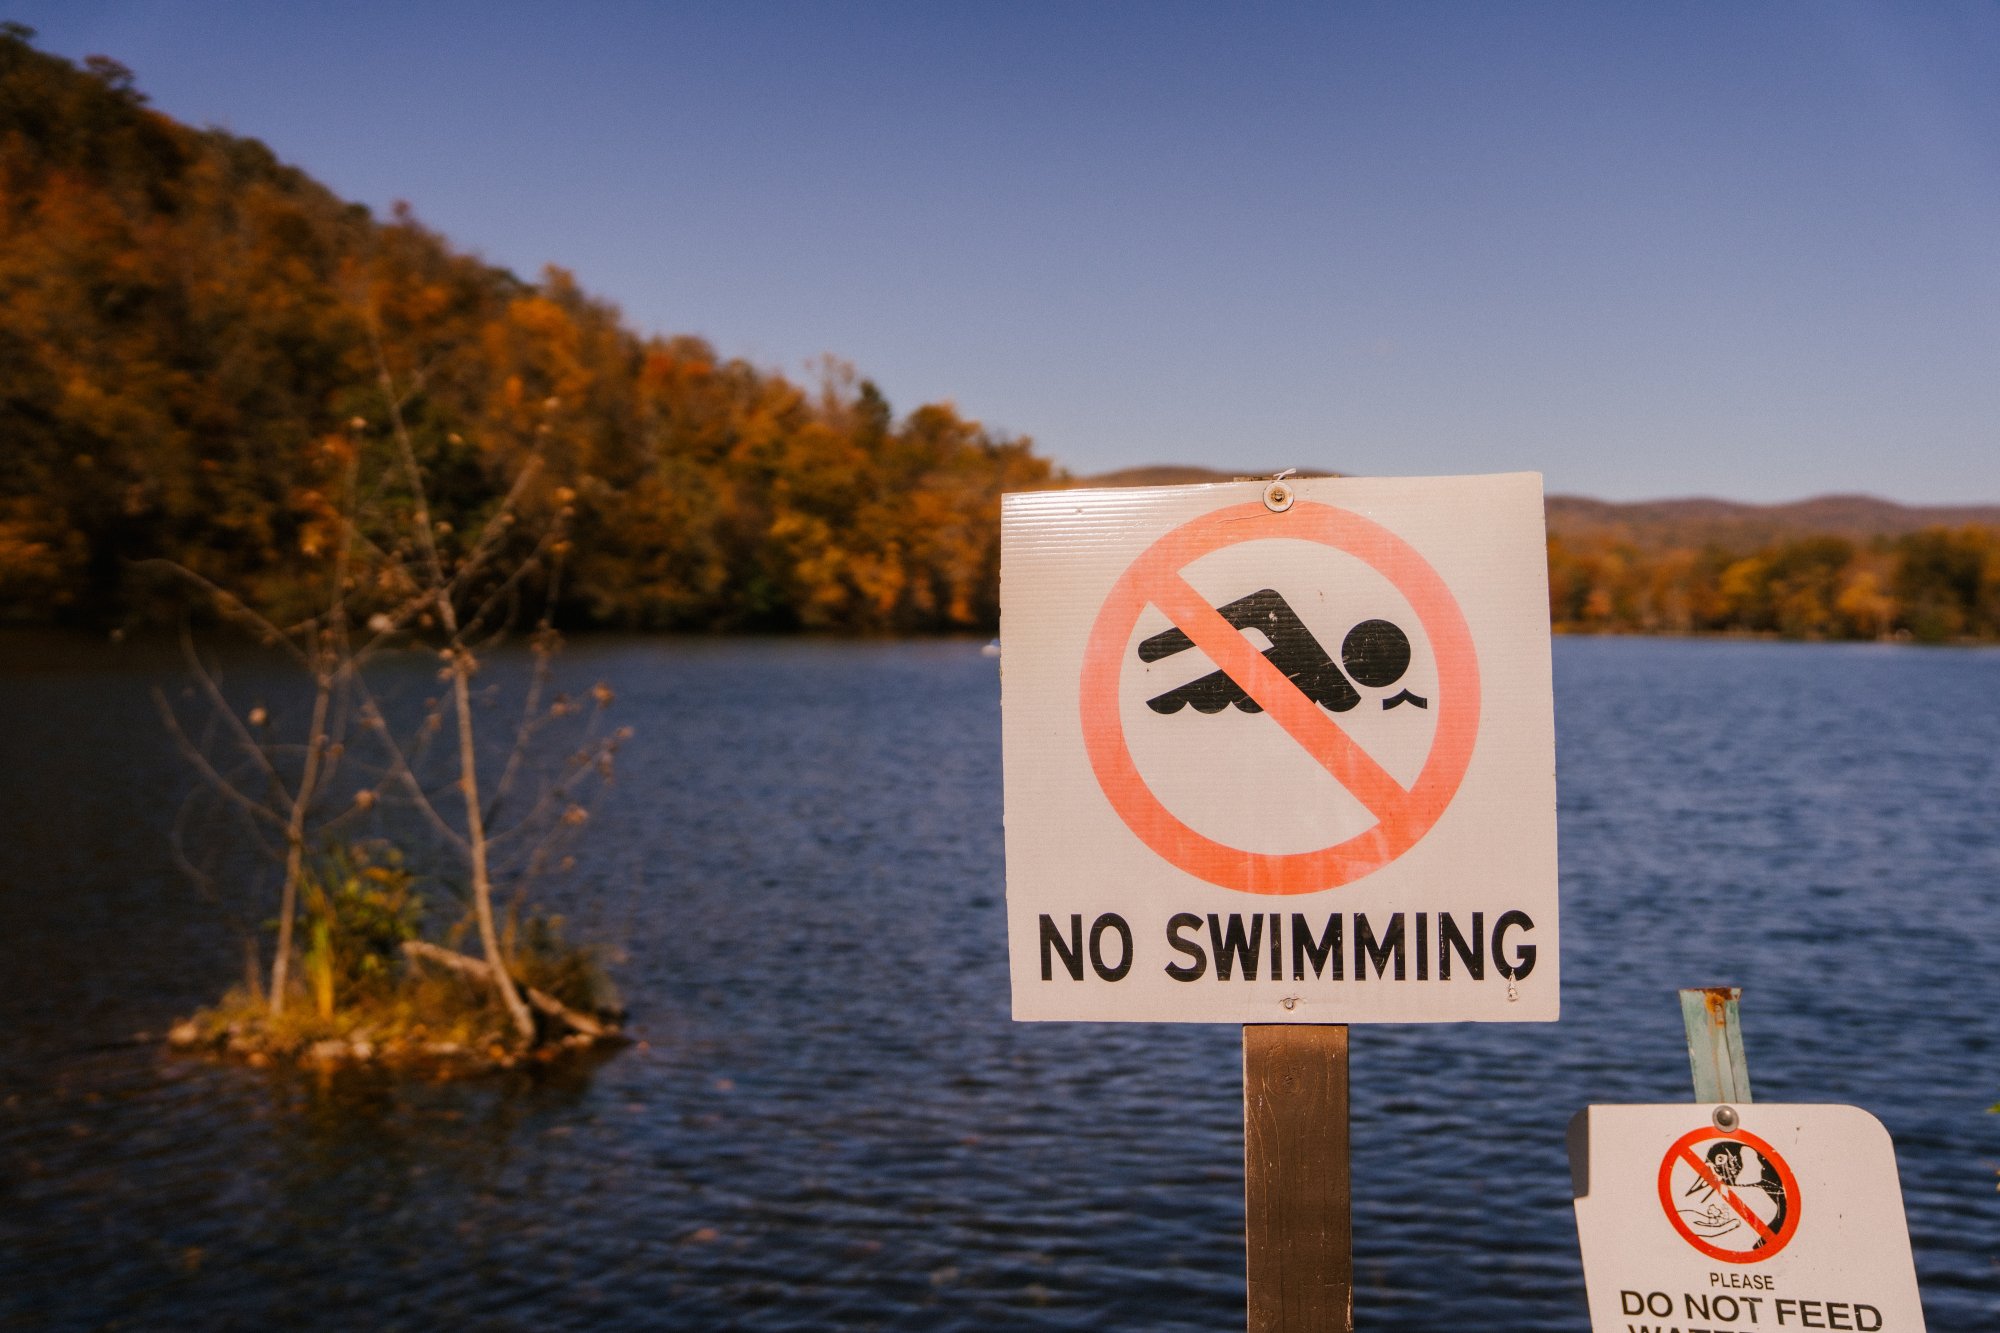 Χαλκιδική: Απαγορεύεται το κολύμπι στην παραλία της Νικήτης - Γέμισε απόβλητα η θάλασσα